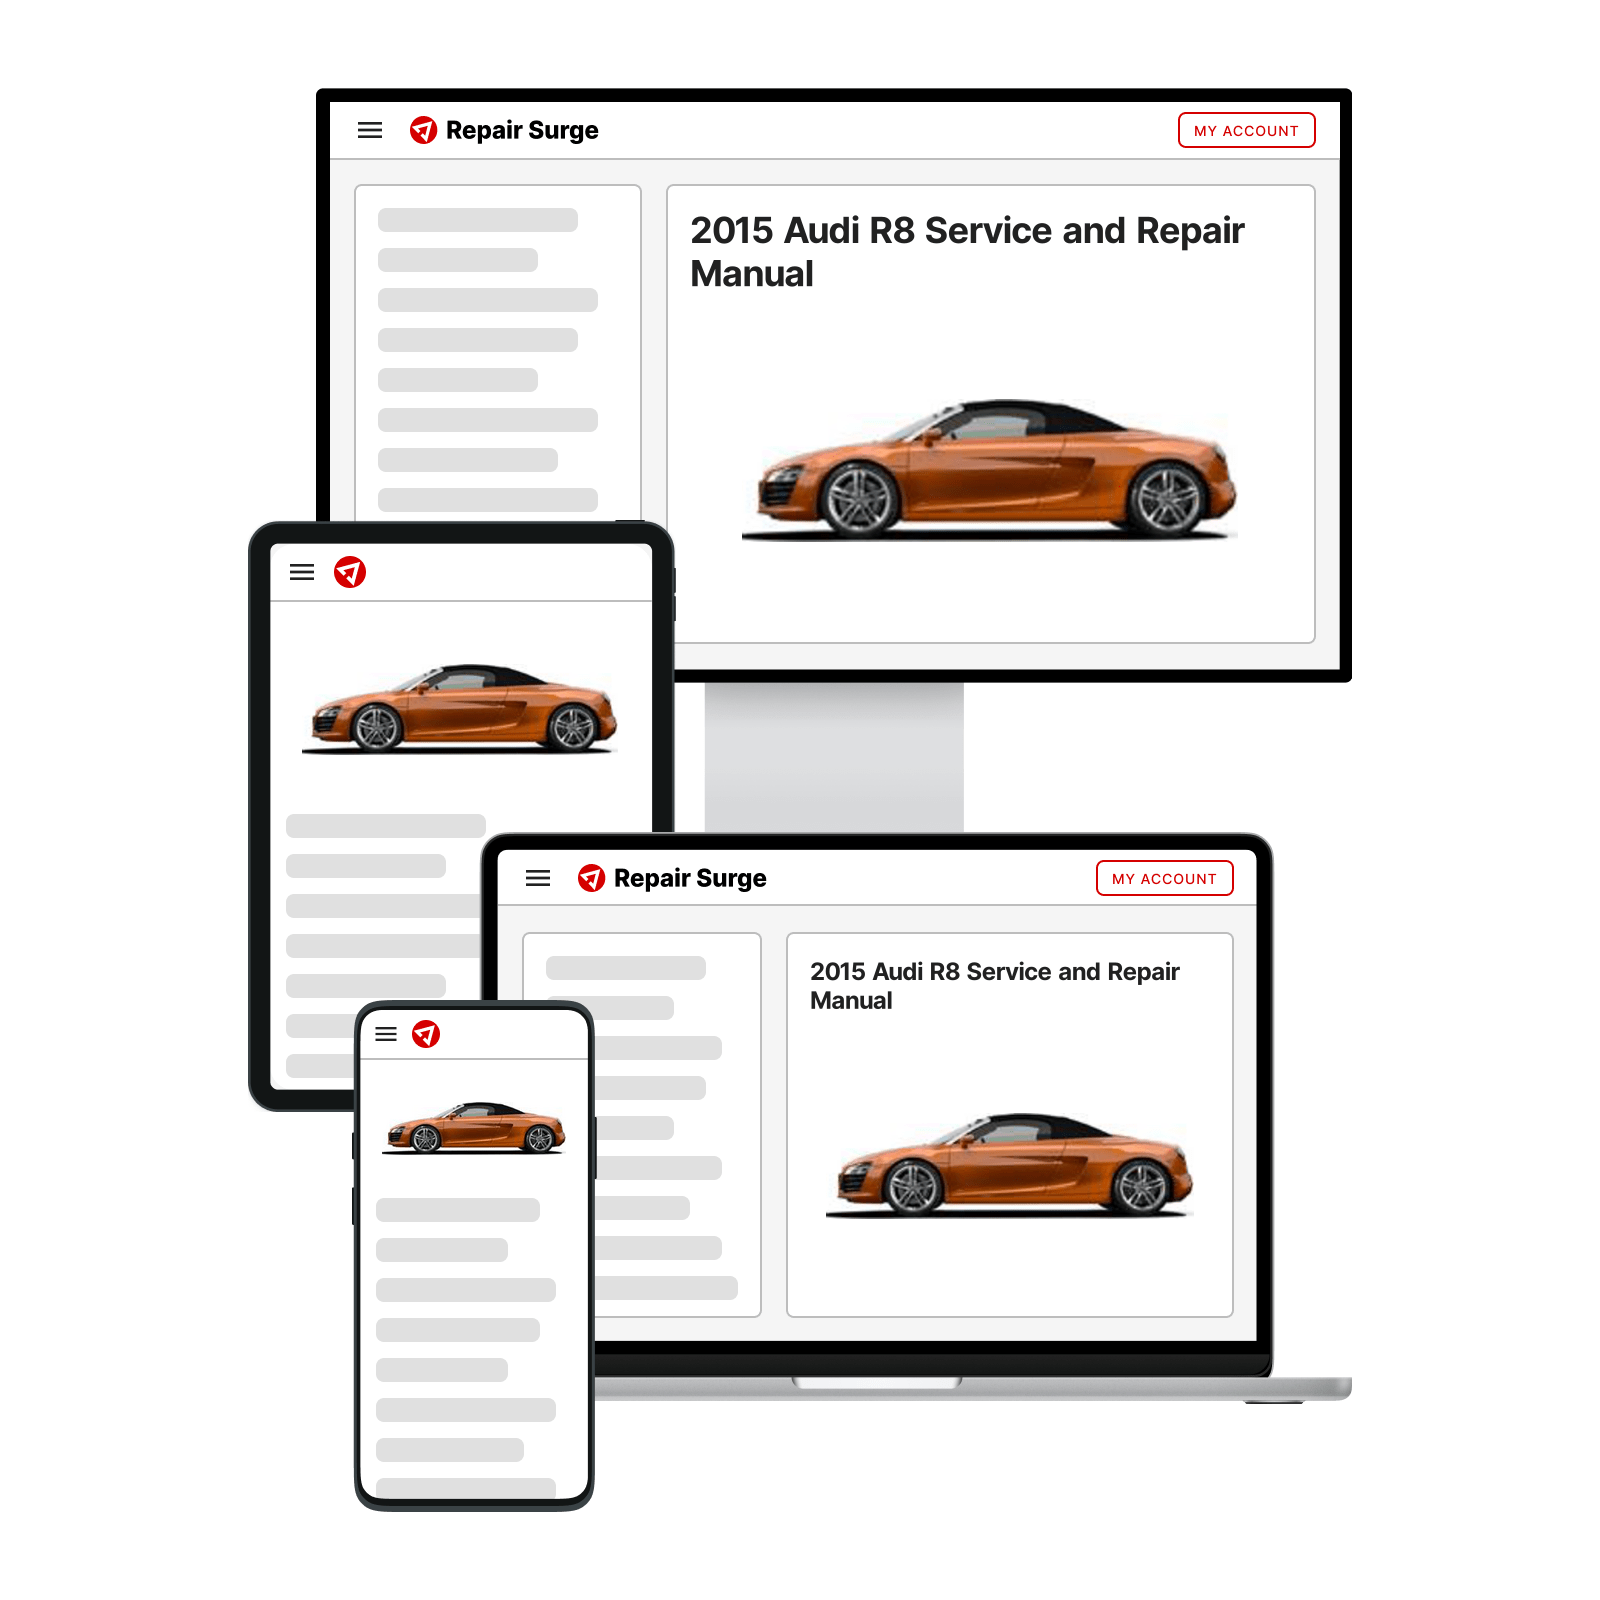 2015 Audi R8 service and repair manual hero image